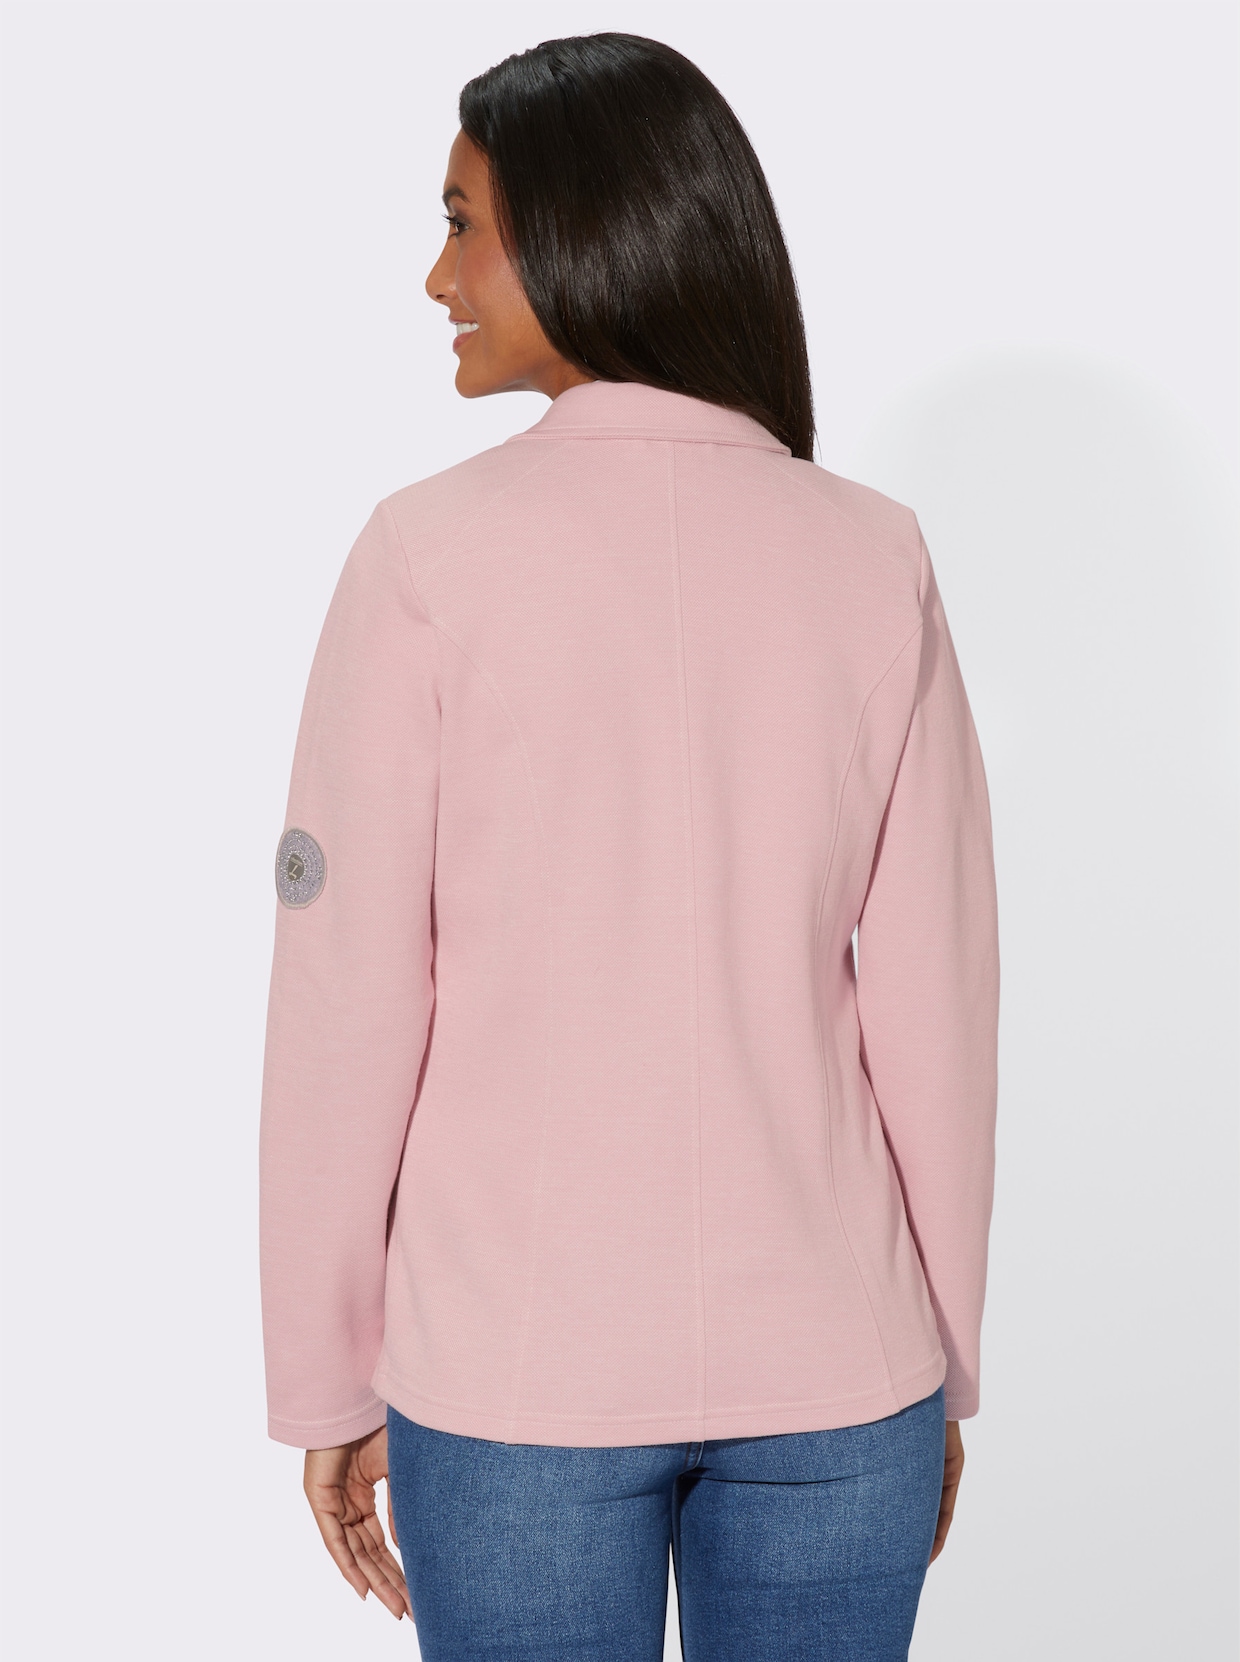 Shirtblazer - roze/wit gemêleerd